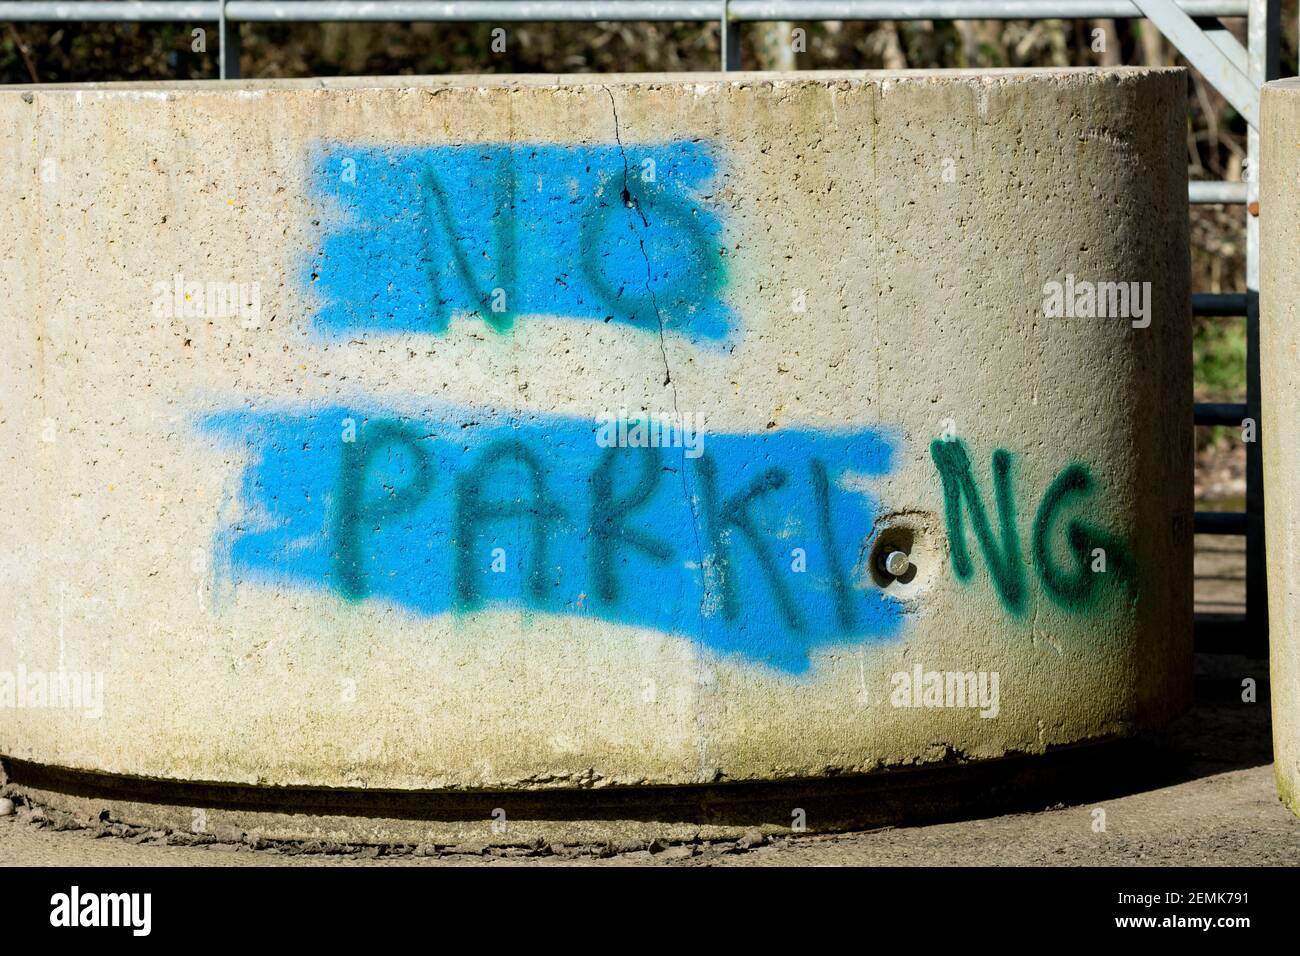 Dipinto a mano "No Parking" su un tubo in cemento. Foto Stock